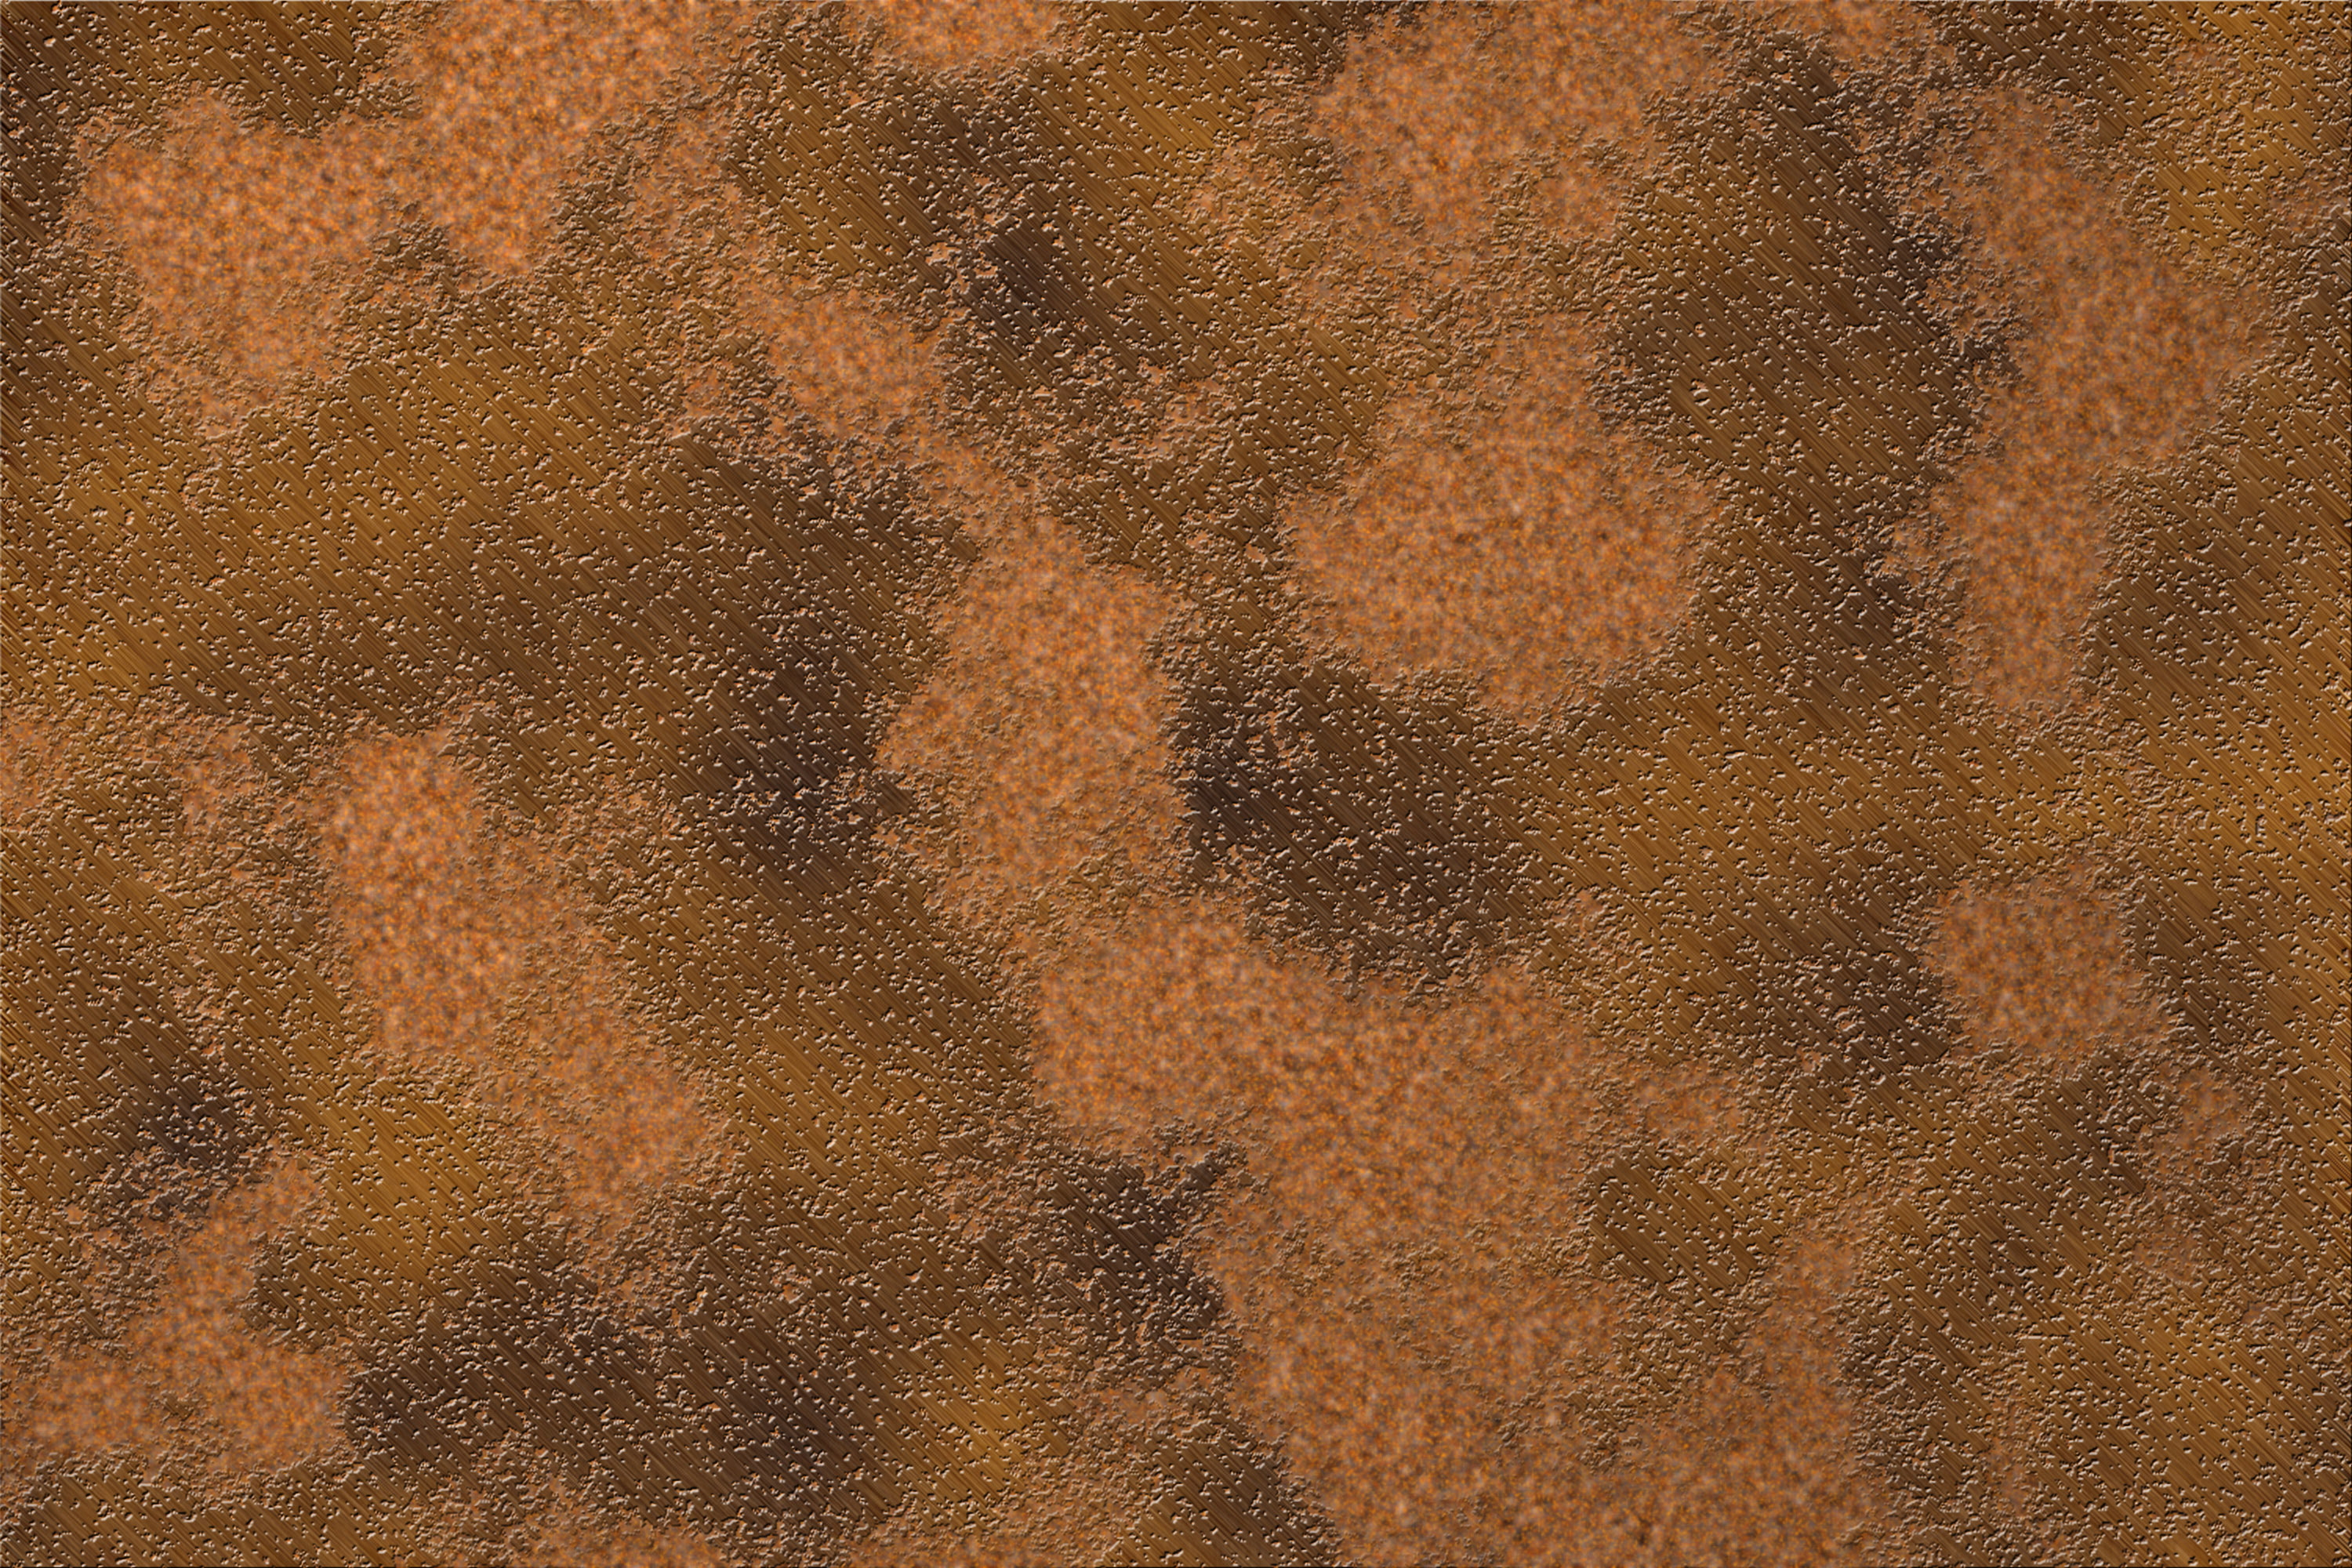 Terrain textures rust фото 93